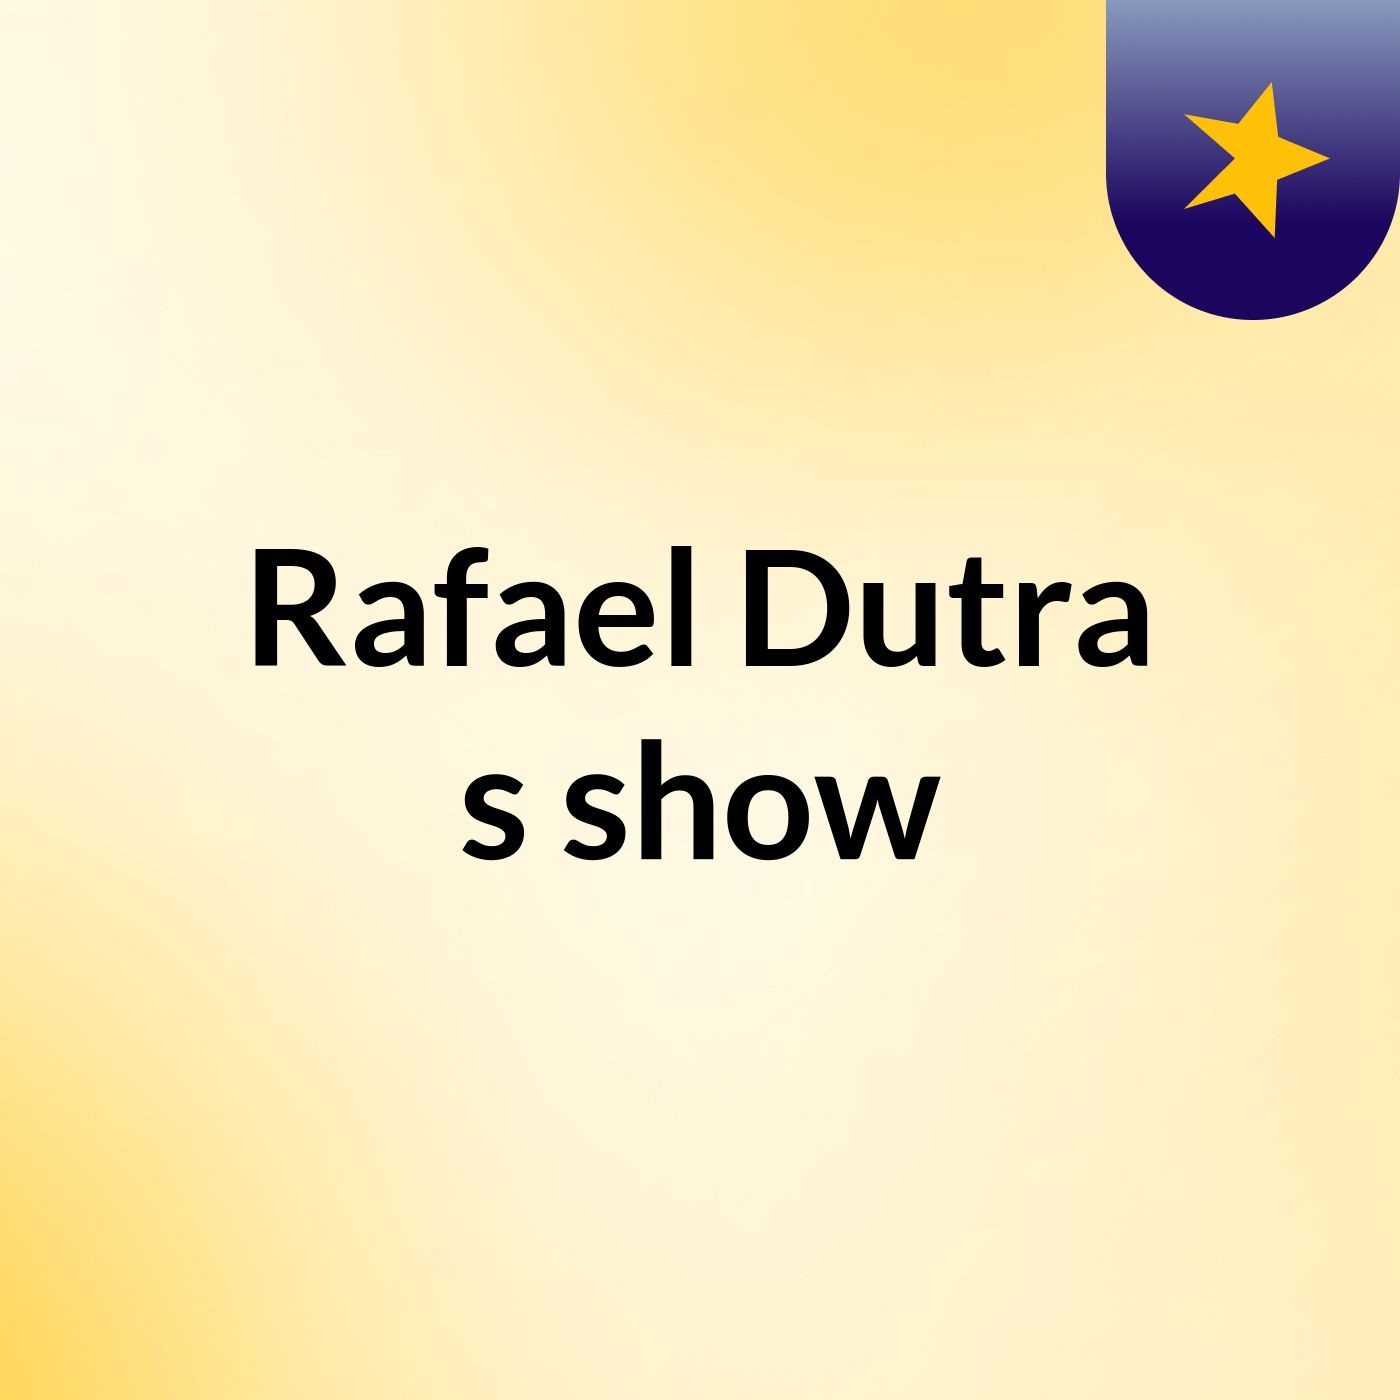 Rafael Dutra's show